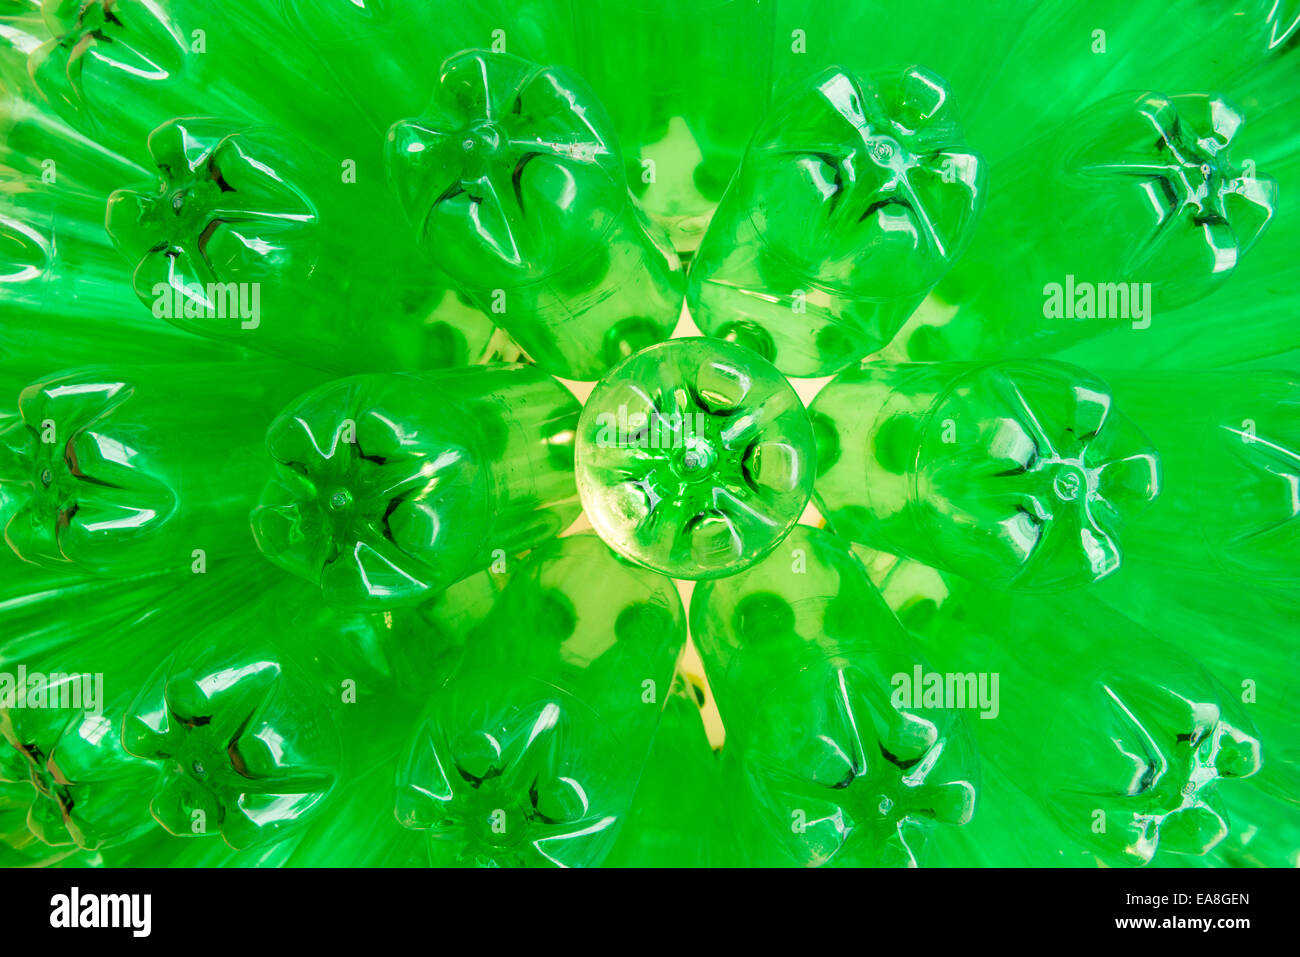 Recyclage des bouteilles en plastique vert Gros plan disposés pour former une lampe sphérique, showcase lors d'une exposition à Cape Town, Afrique du Sud Banque D'Images